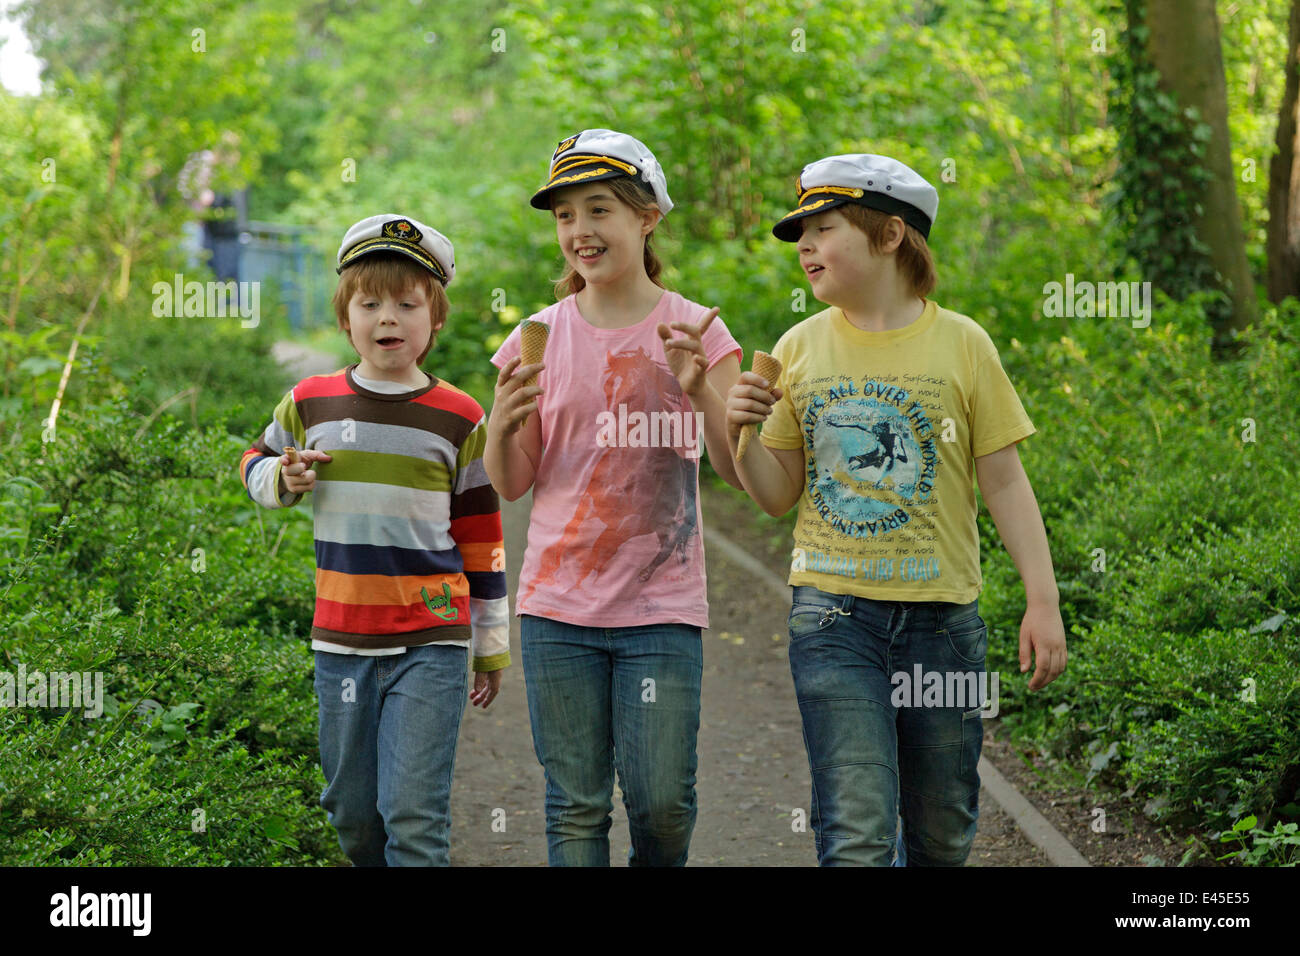 Trois enfants avec des chapeaux du capitaine ayant une conversation Banque D'Images